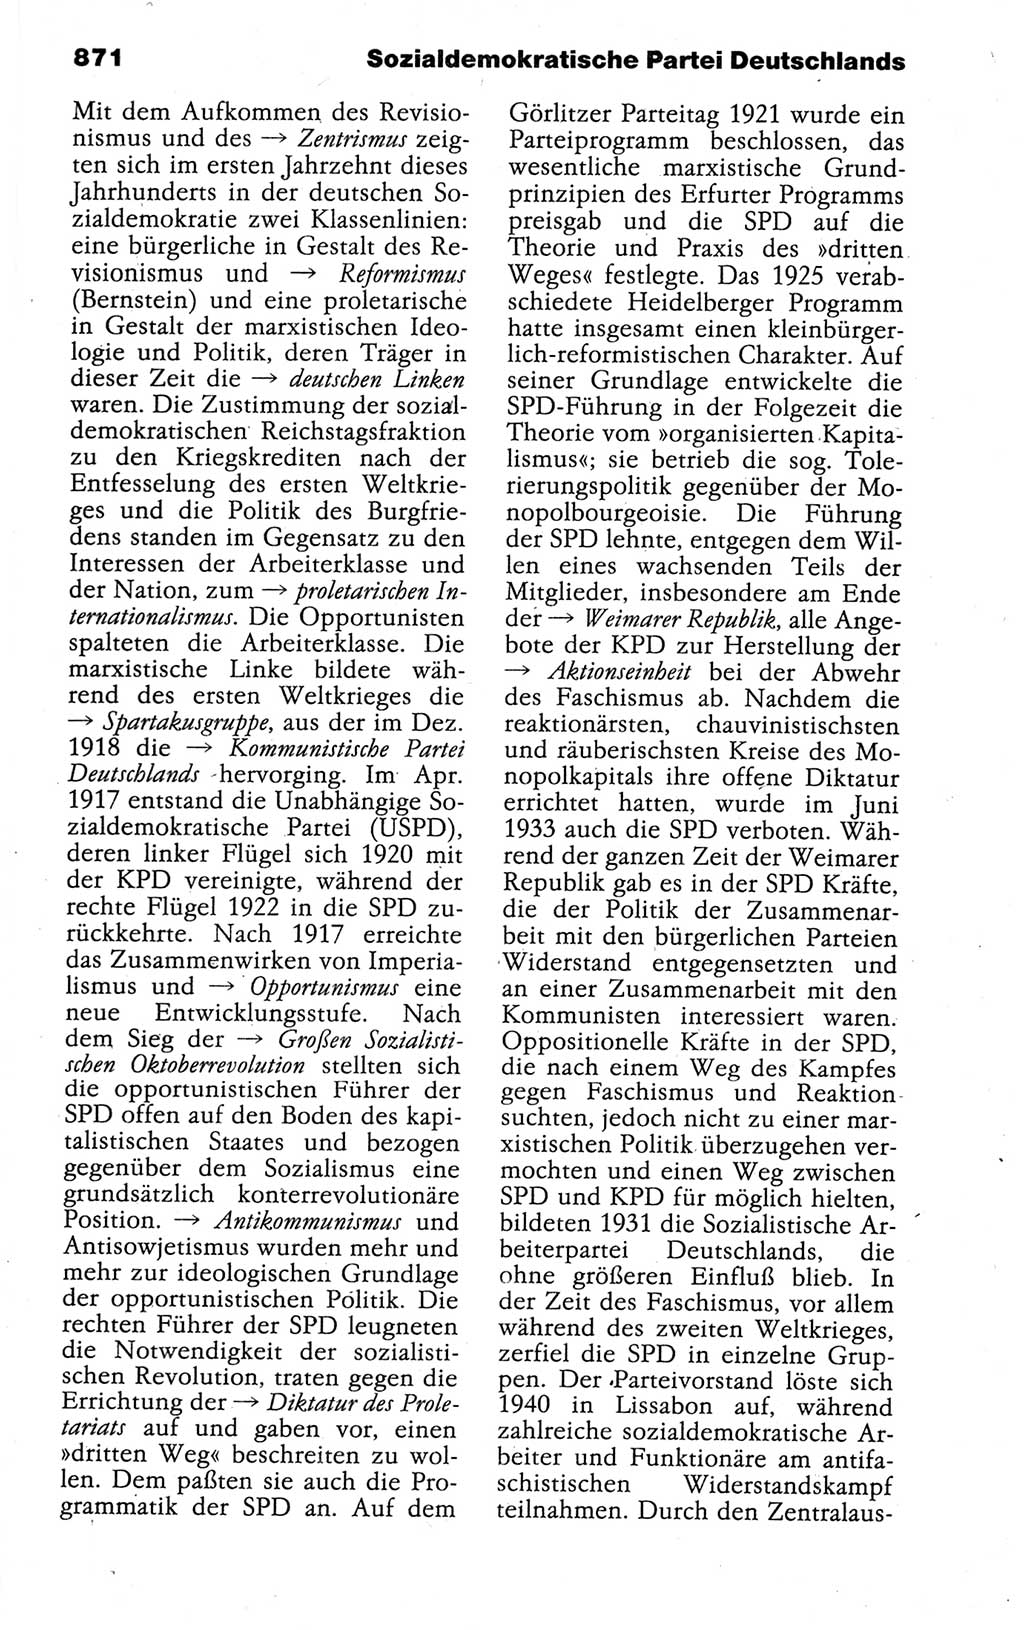 Kleines politisches Wörterbuch [Deutsche Demokratische Republik (DDR)] 1988, Seite 871 (Kl. pol. Wb. DDR 1988, S. 871)